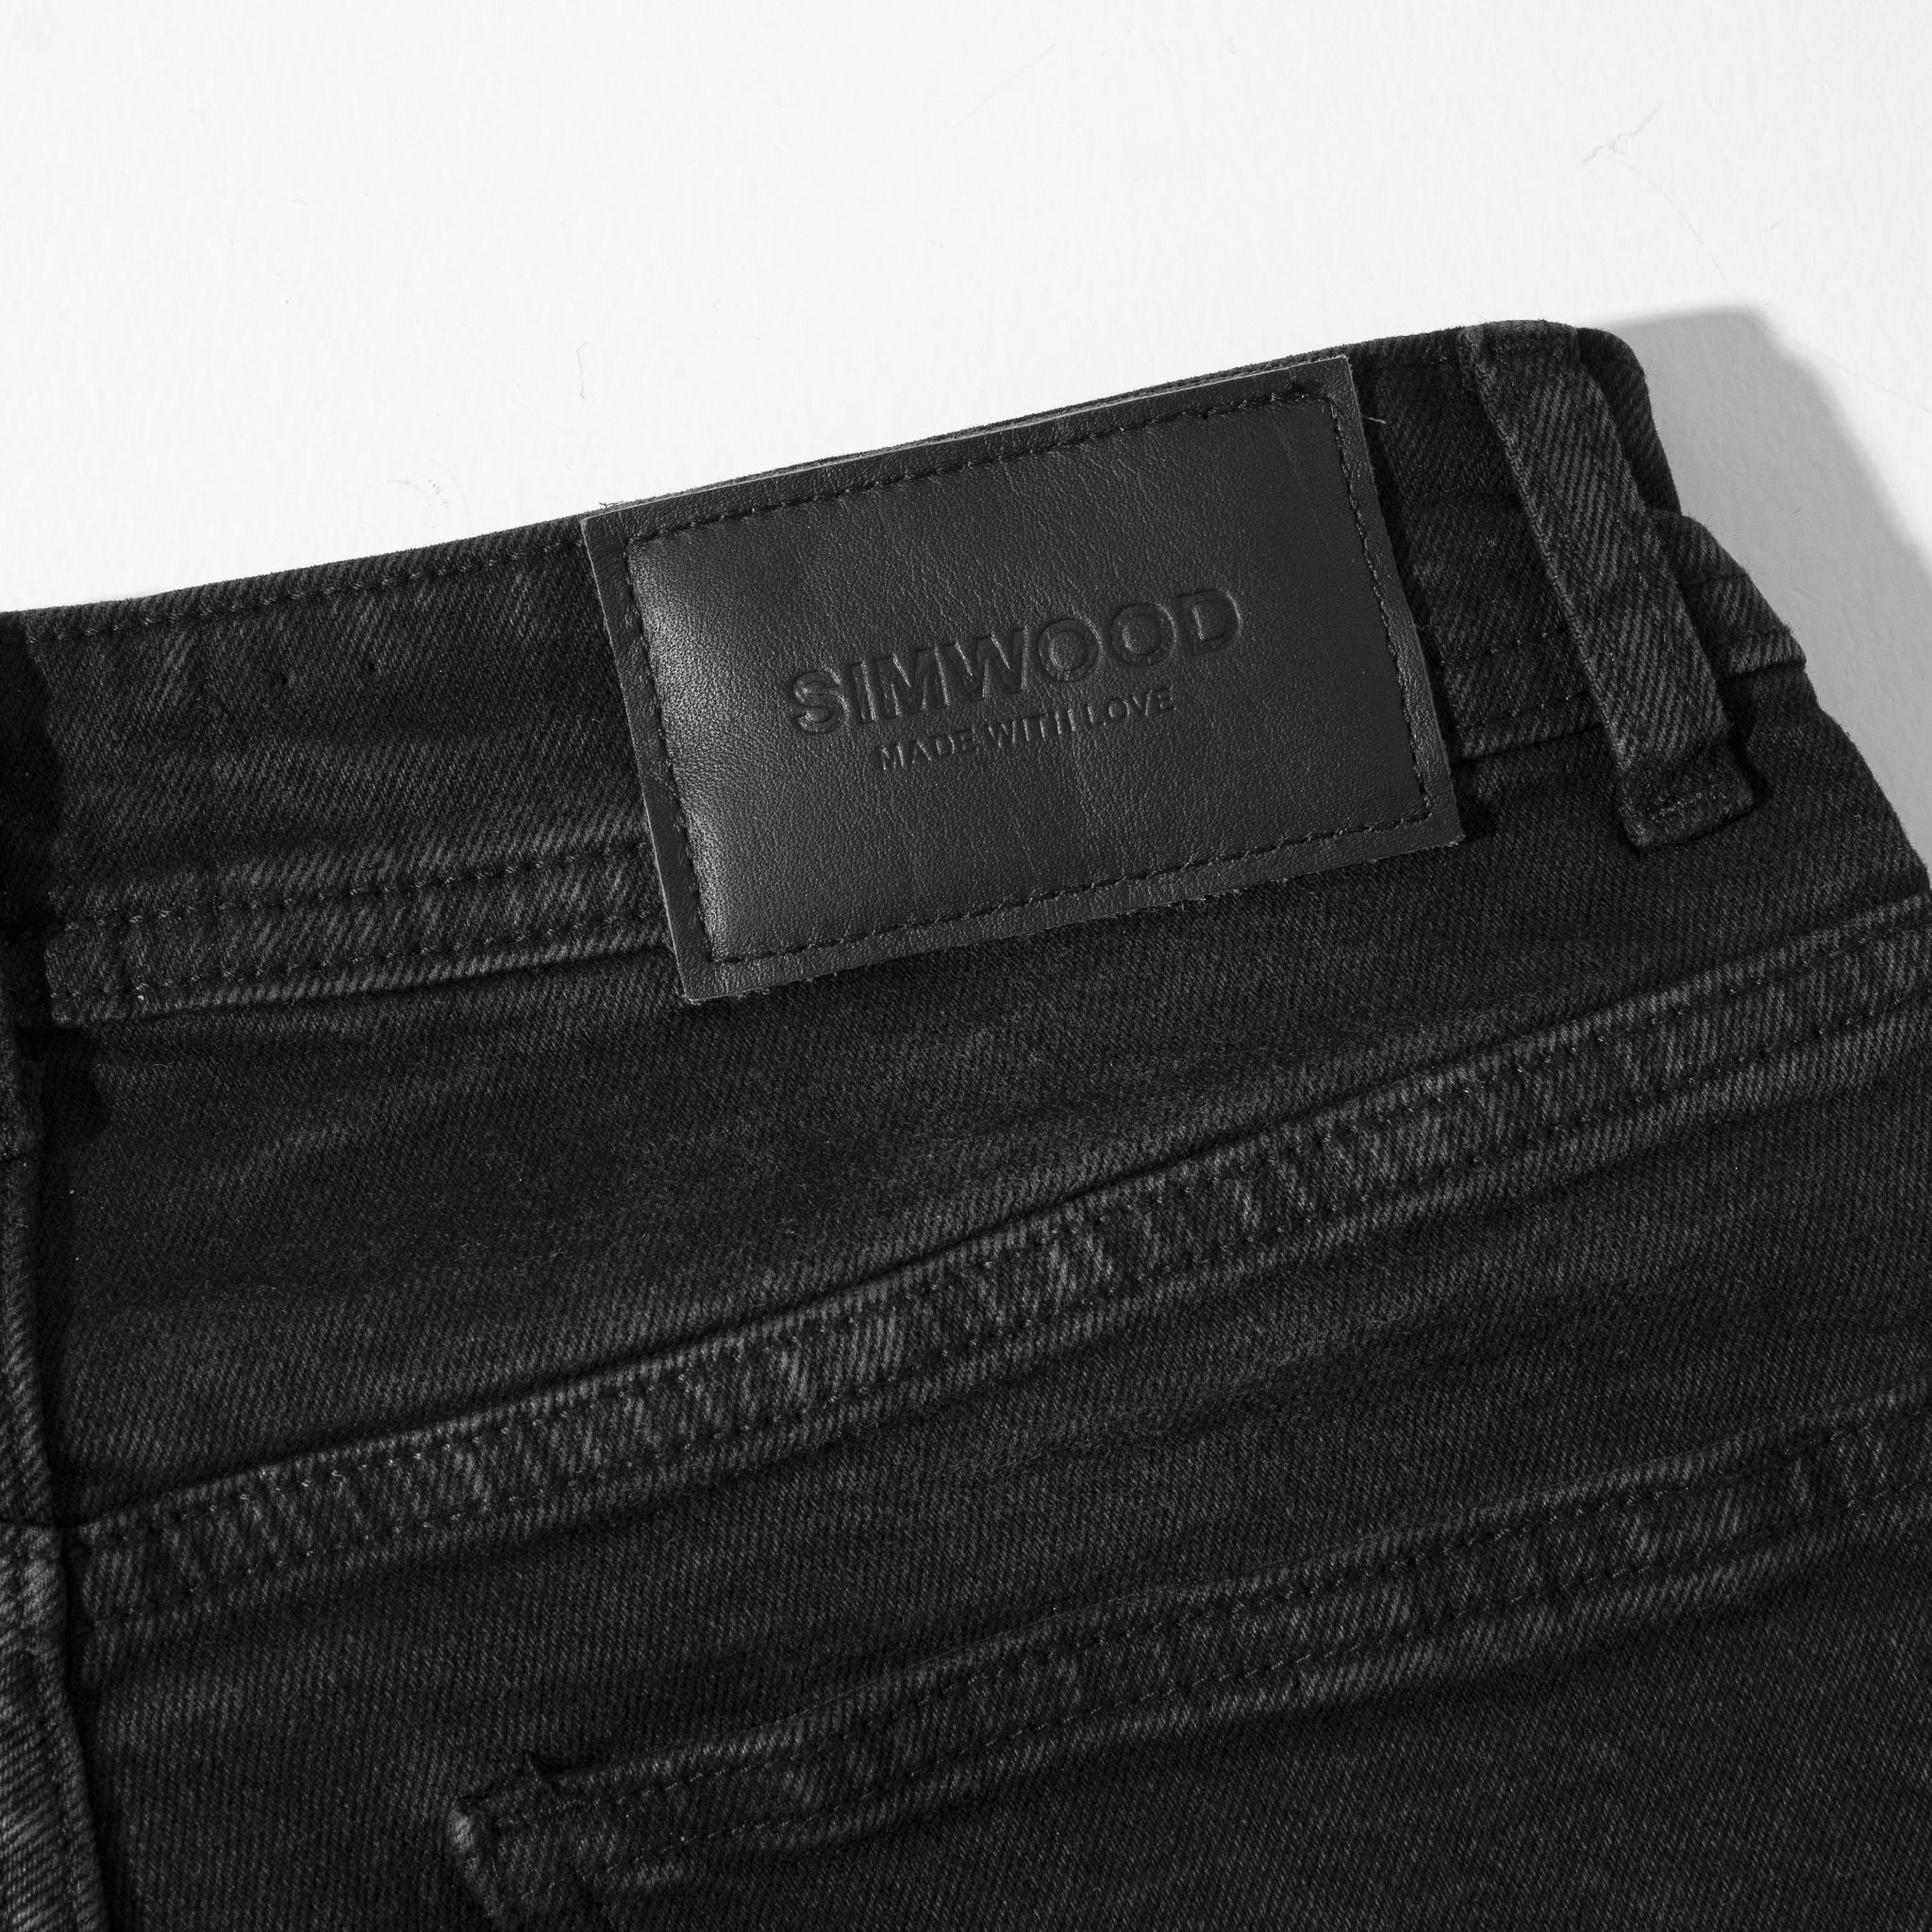  Quần Shorts Jeans Simwood Denim Dark Black 1548 